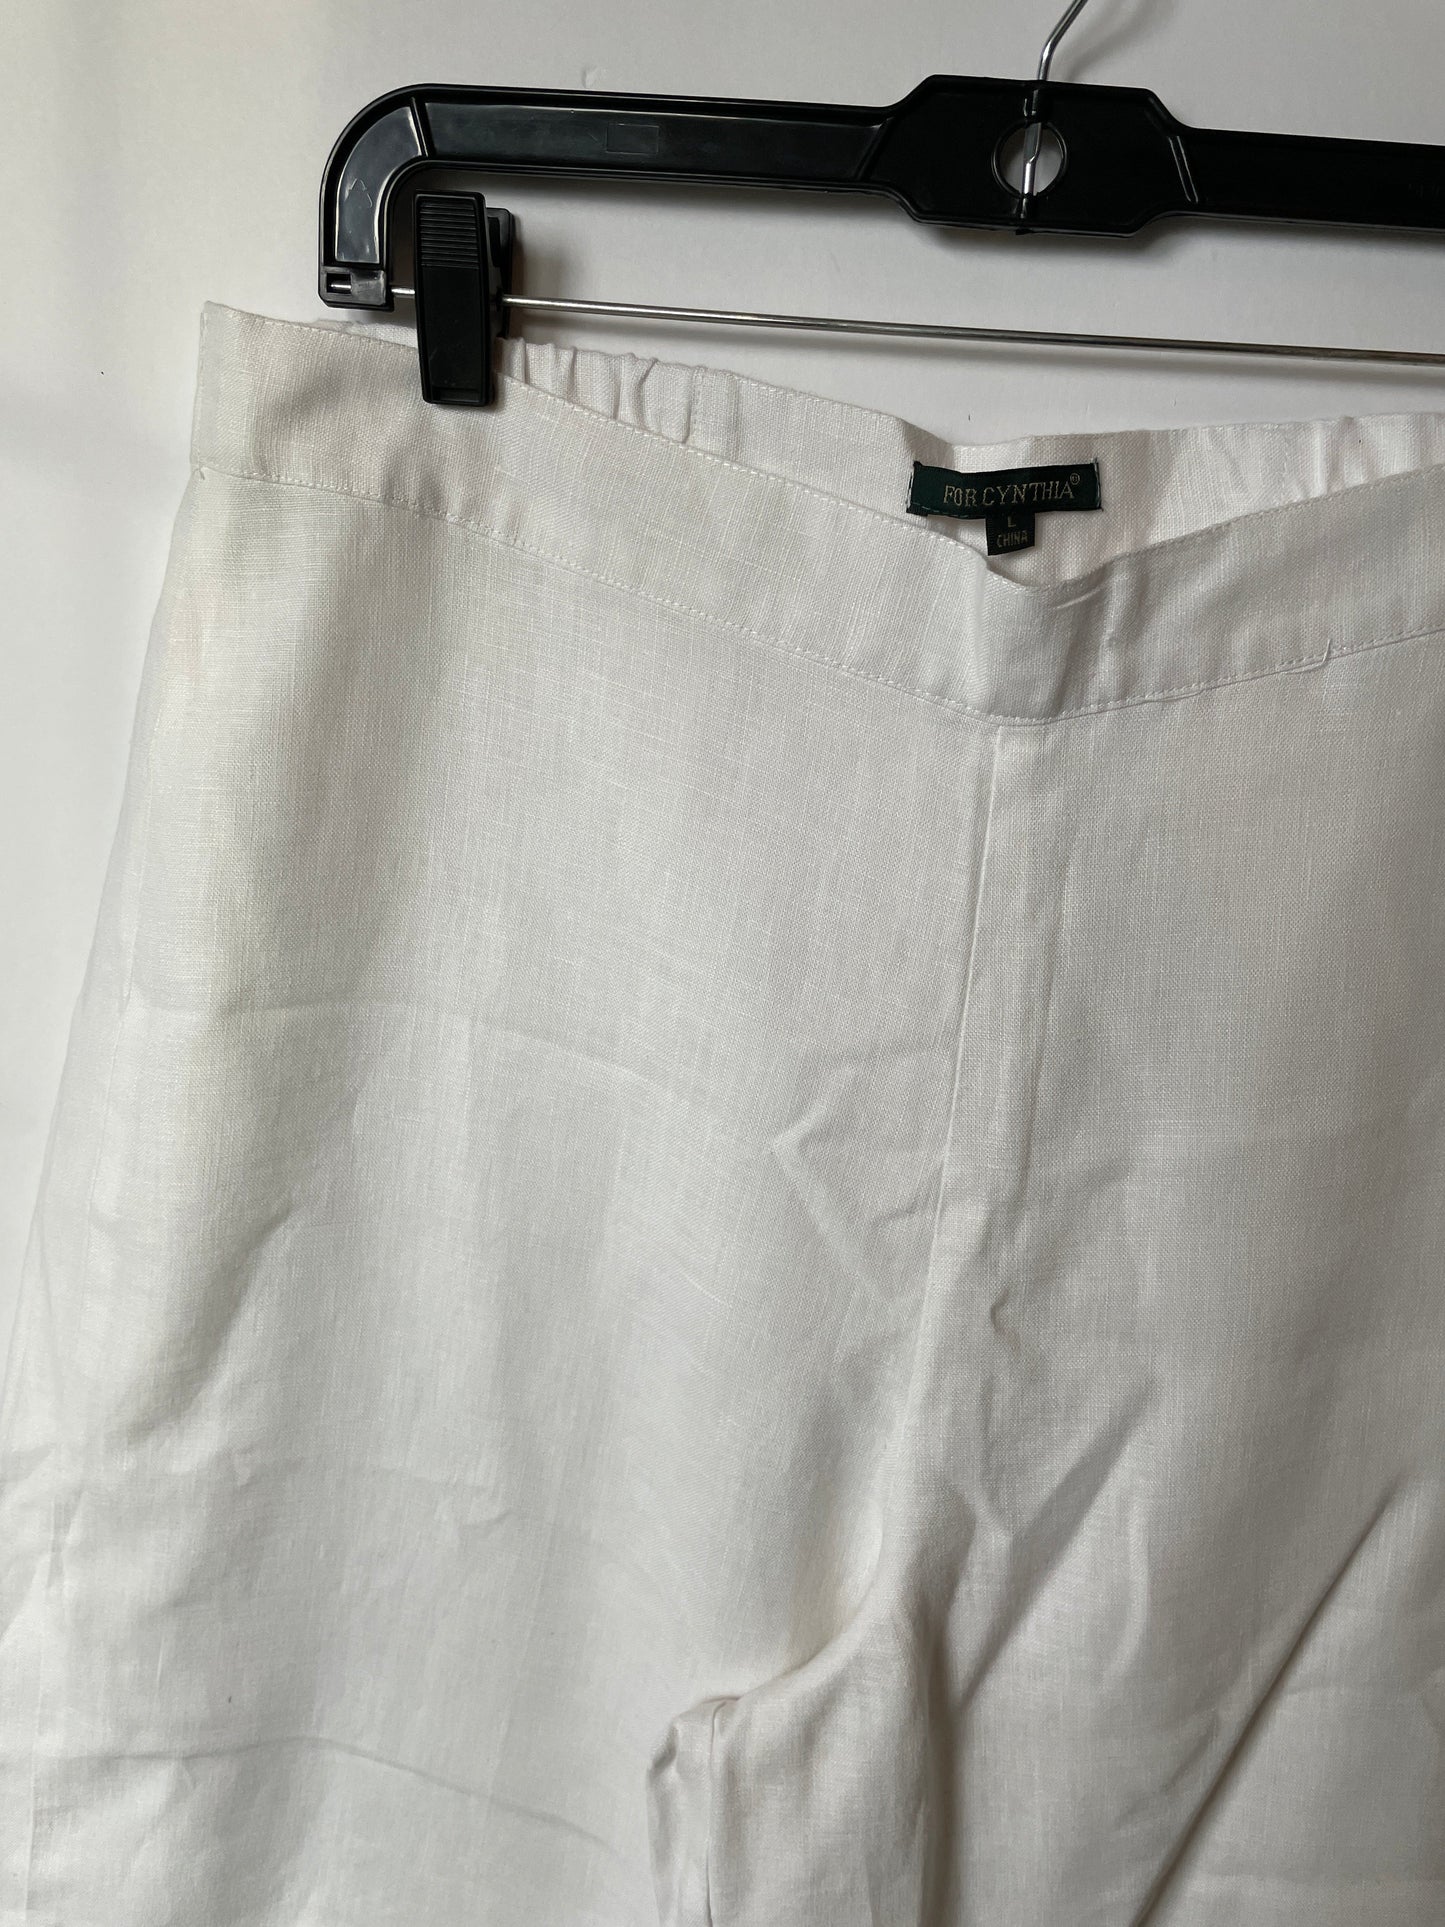 White Pants Linen For Cynthia, Size 12